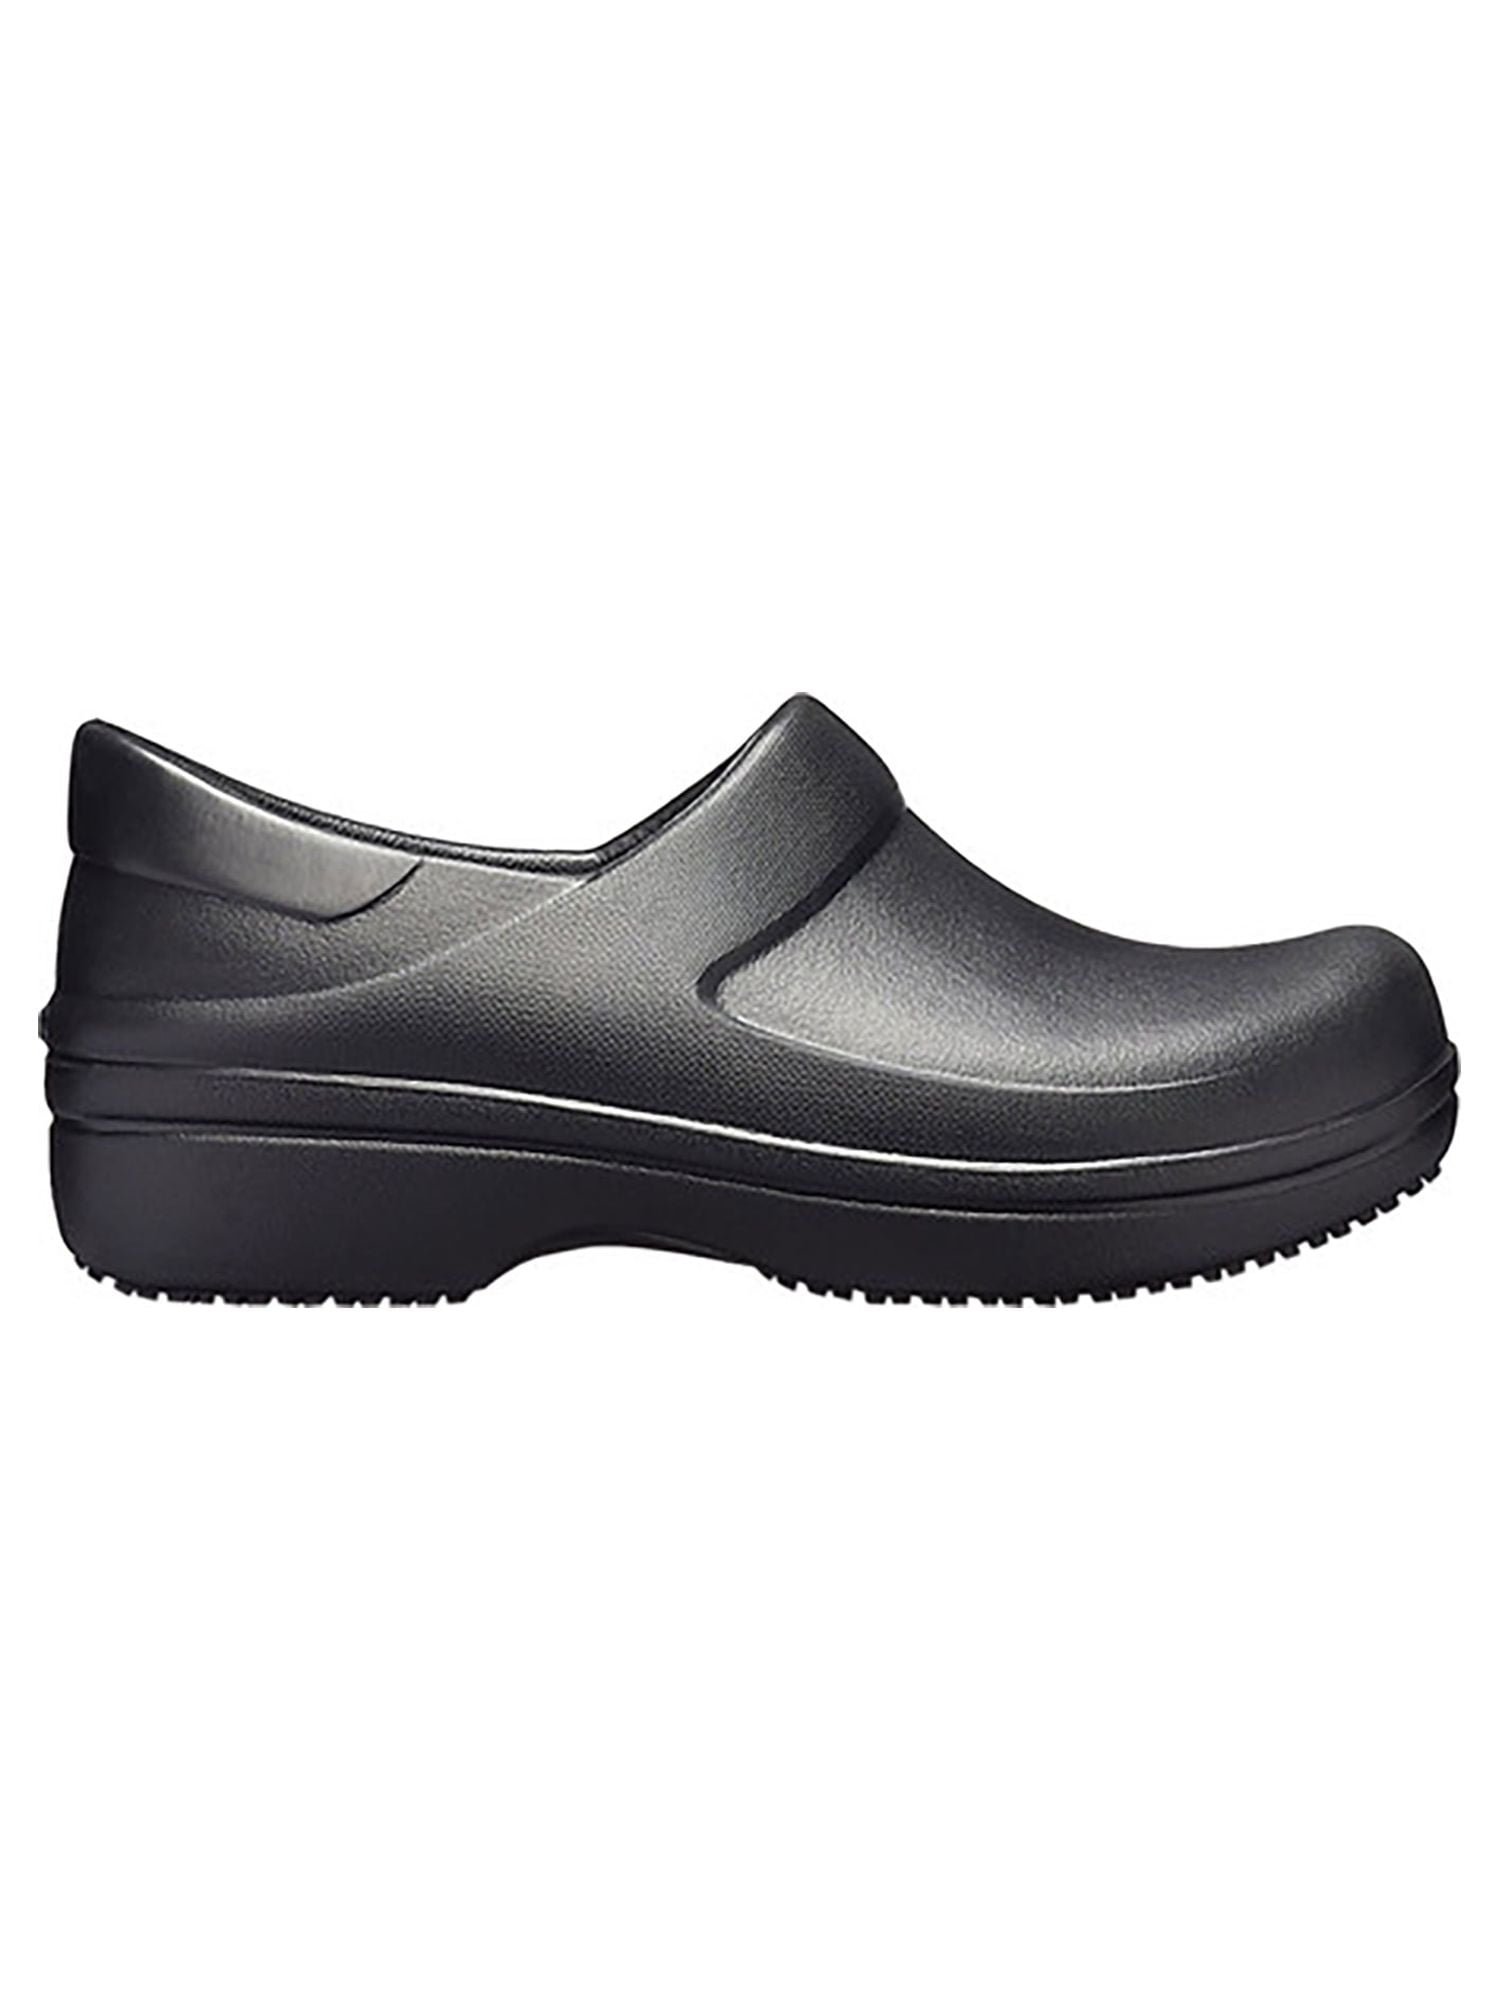 Crocs Neria Pro II - Crocs embellecidos para mujer | Zapatos de trabajo  antideslizantes, blanco, 4